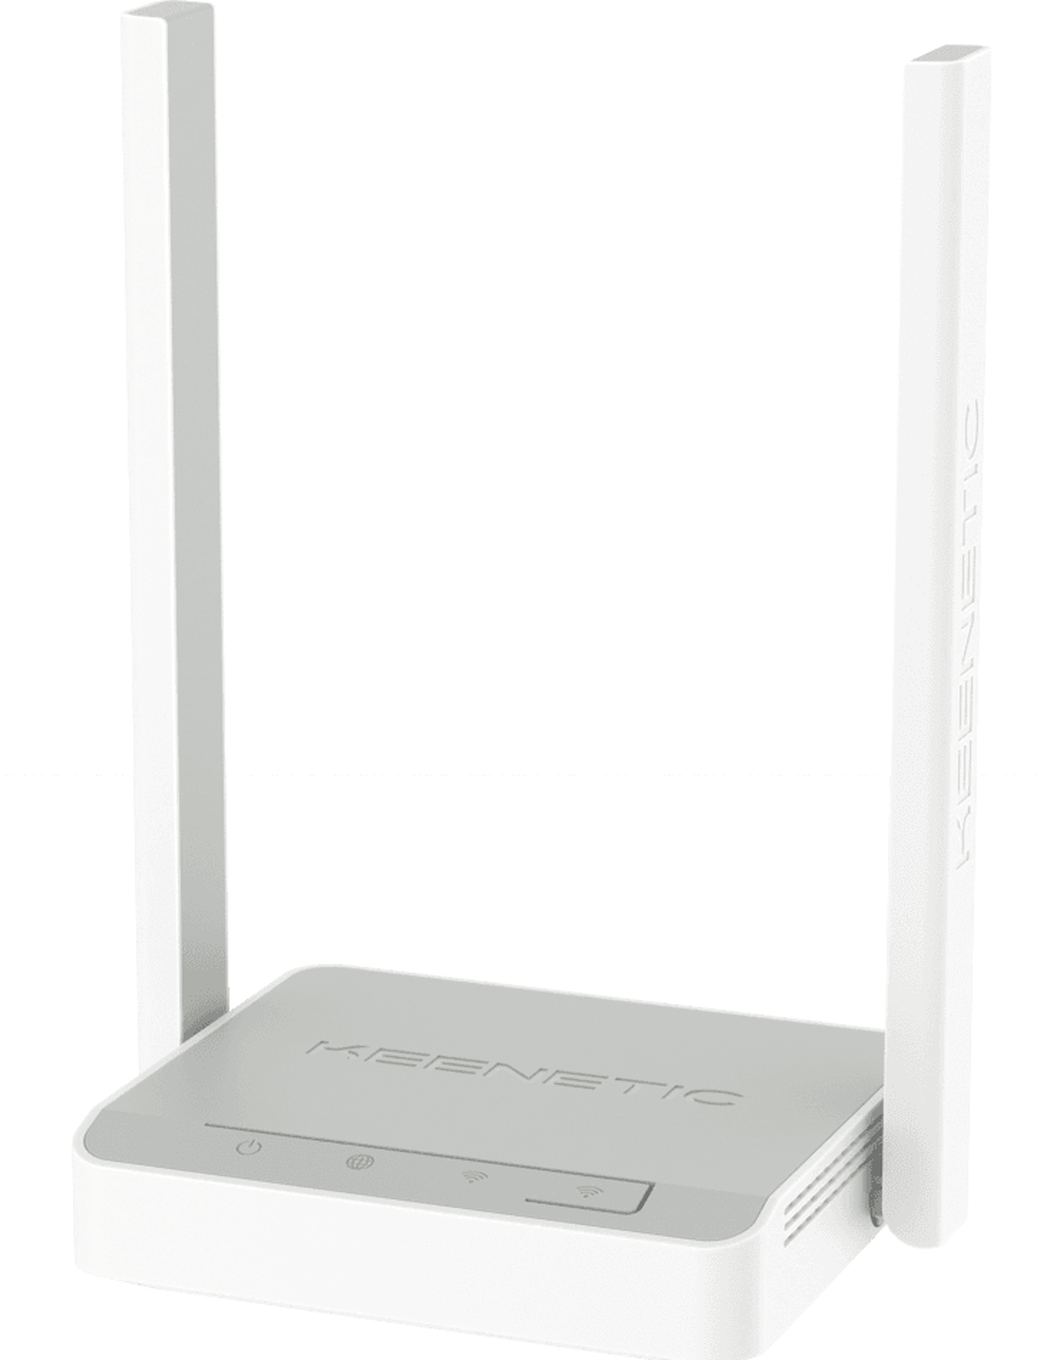 Wi-Fi роутер Keenetic 4G (KN-1212), серый фото